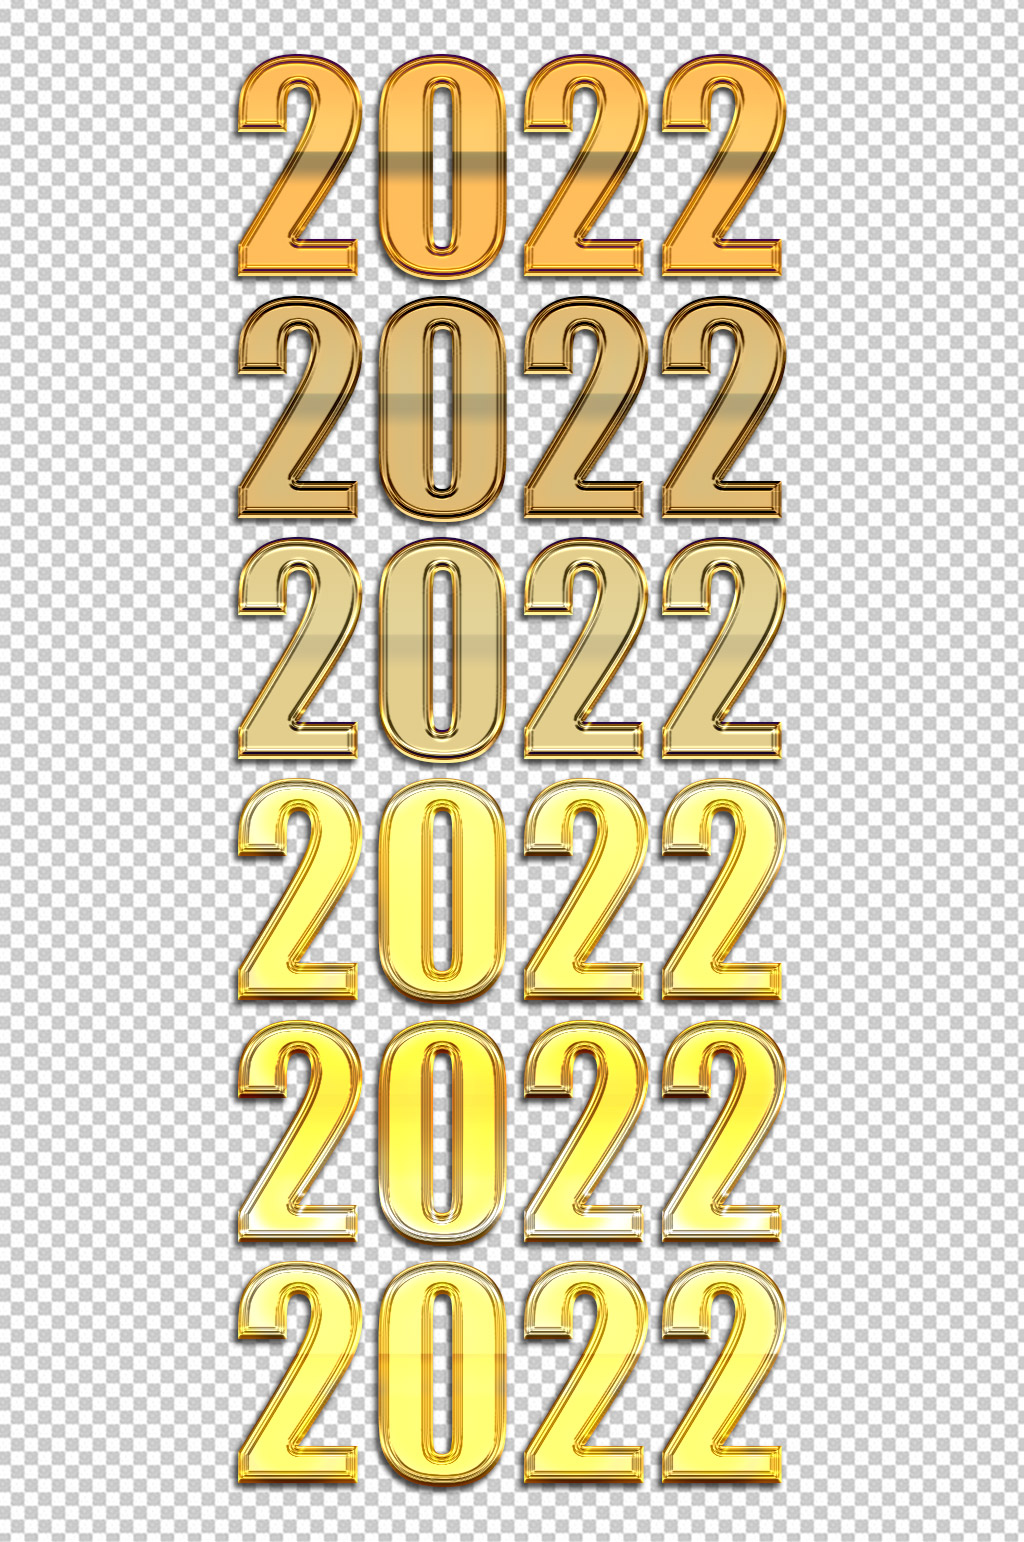 2022字体效果psd图层样式素材合集